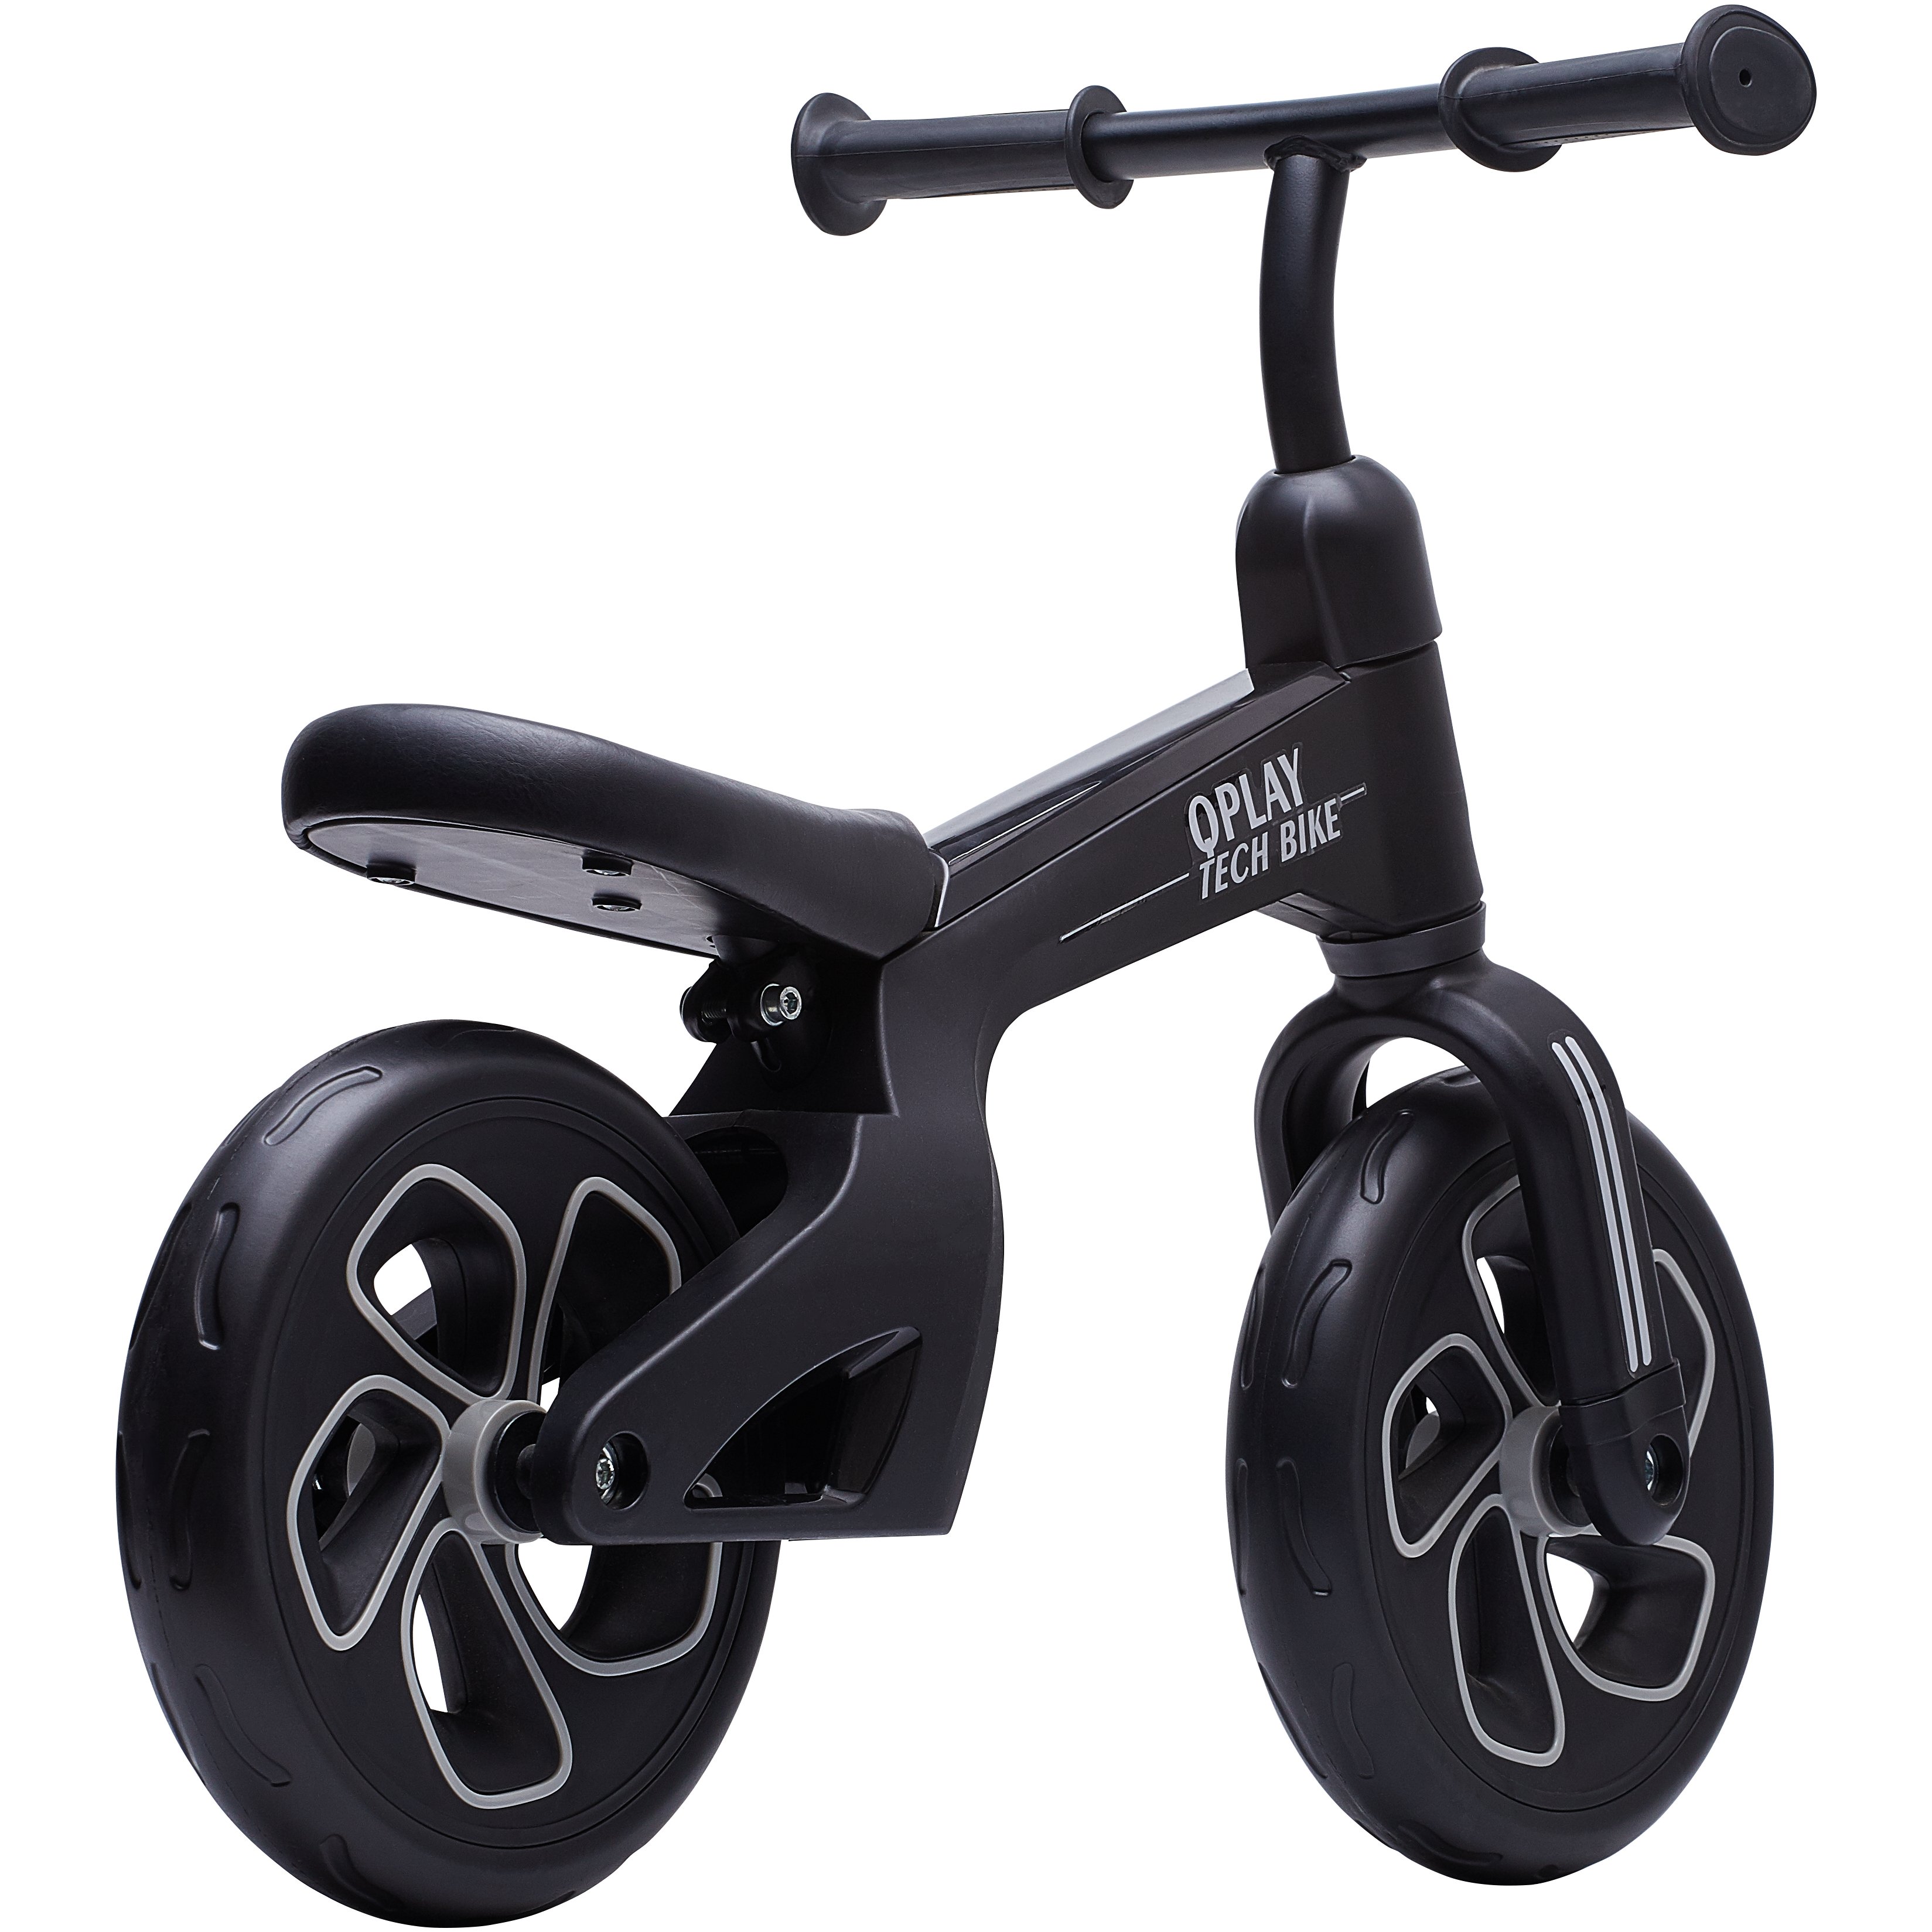 Беговел детский Qplay Tech Air, черный (QP-Bike-001Black) - фото 2